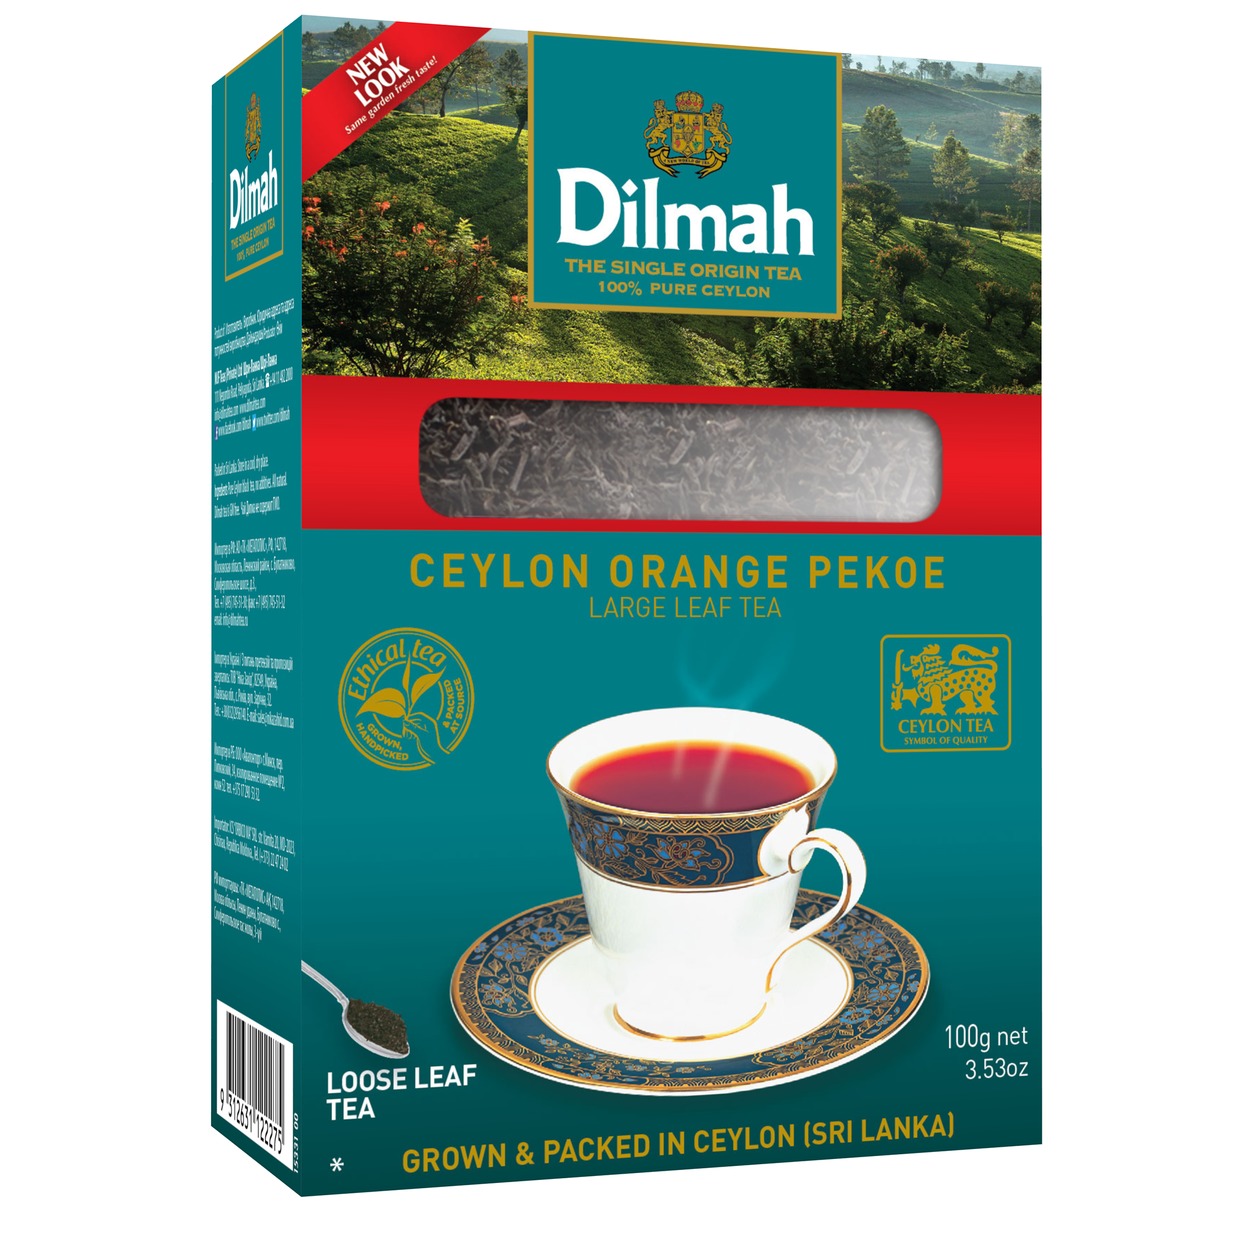 Чай Dilmah, цейлон, черный, 100 г по акции в Пятерочке